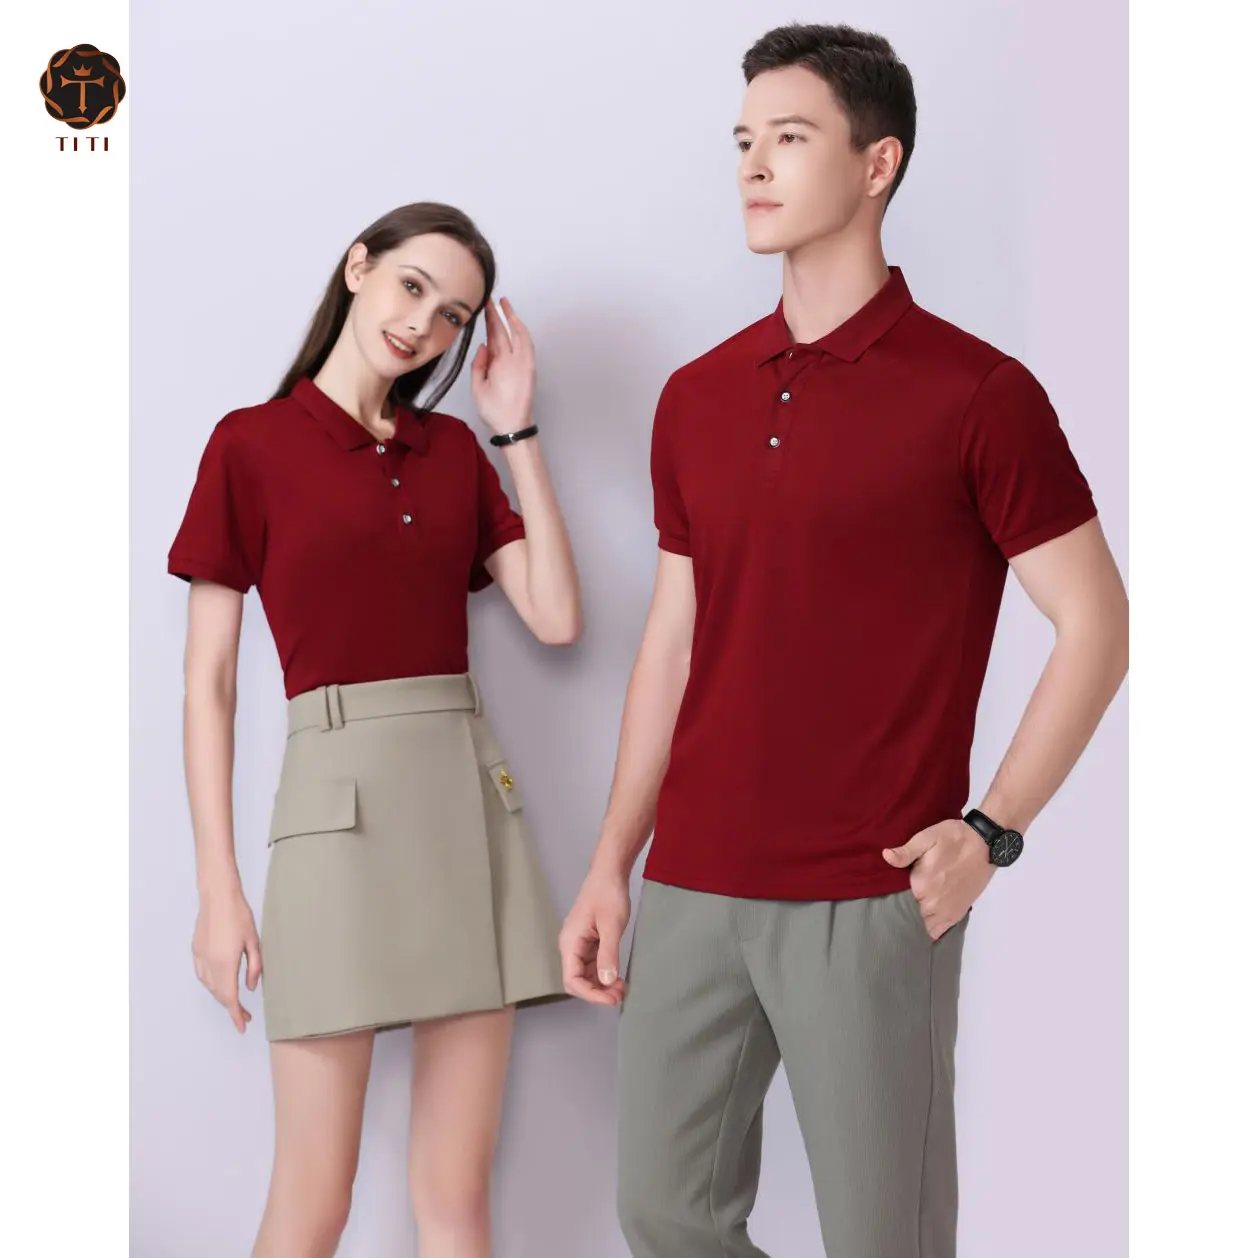 Toptan özel ipek polyester nakış logosu Polo gömlekler yüksek kalite düz Golf Polo t-shirt özel bordo Polo gömlekler